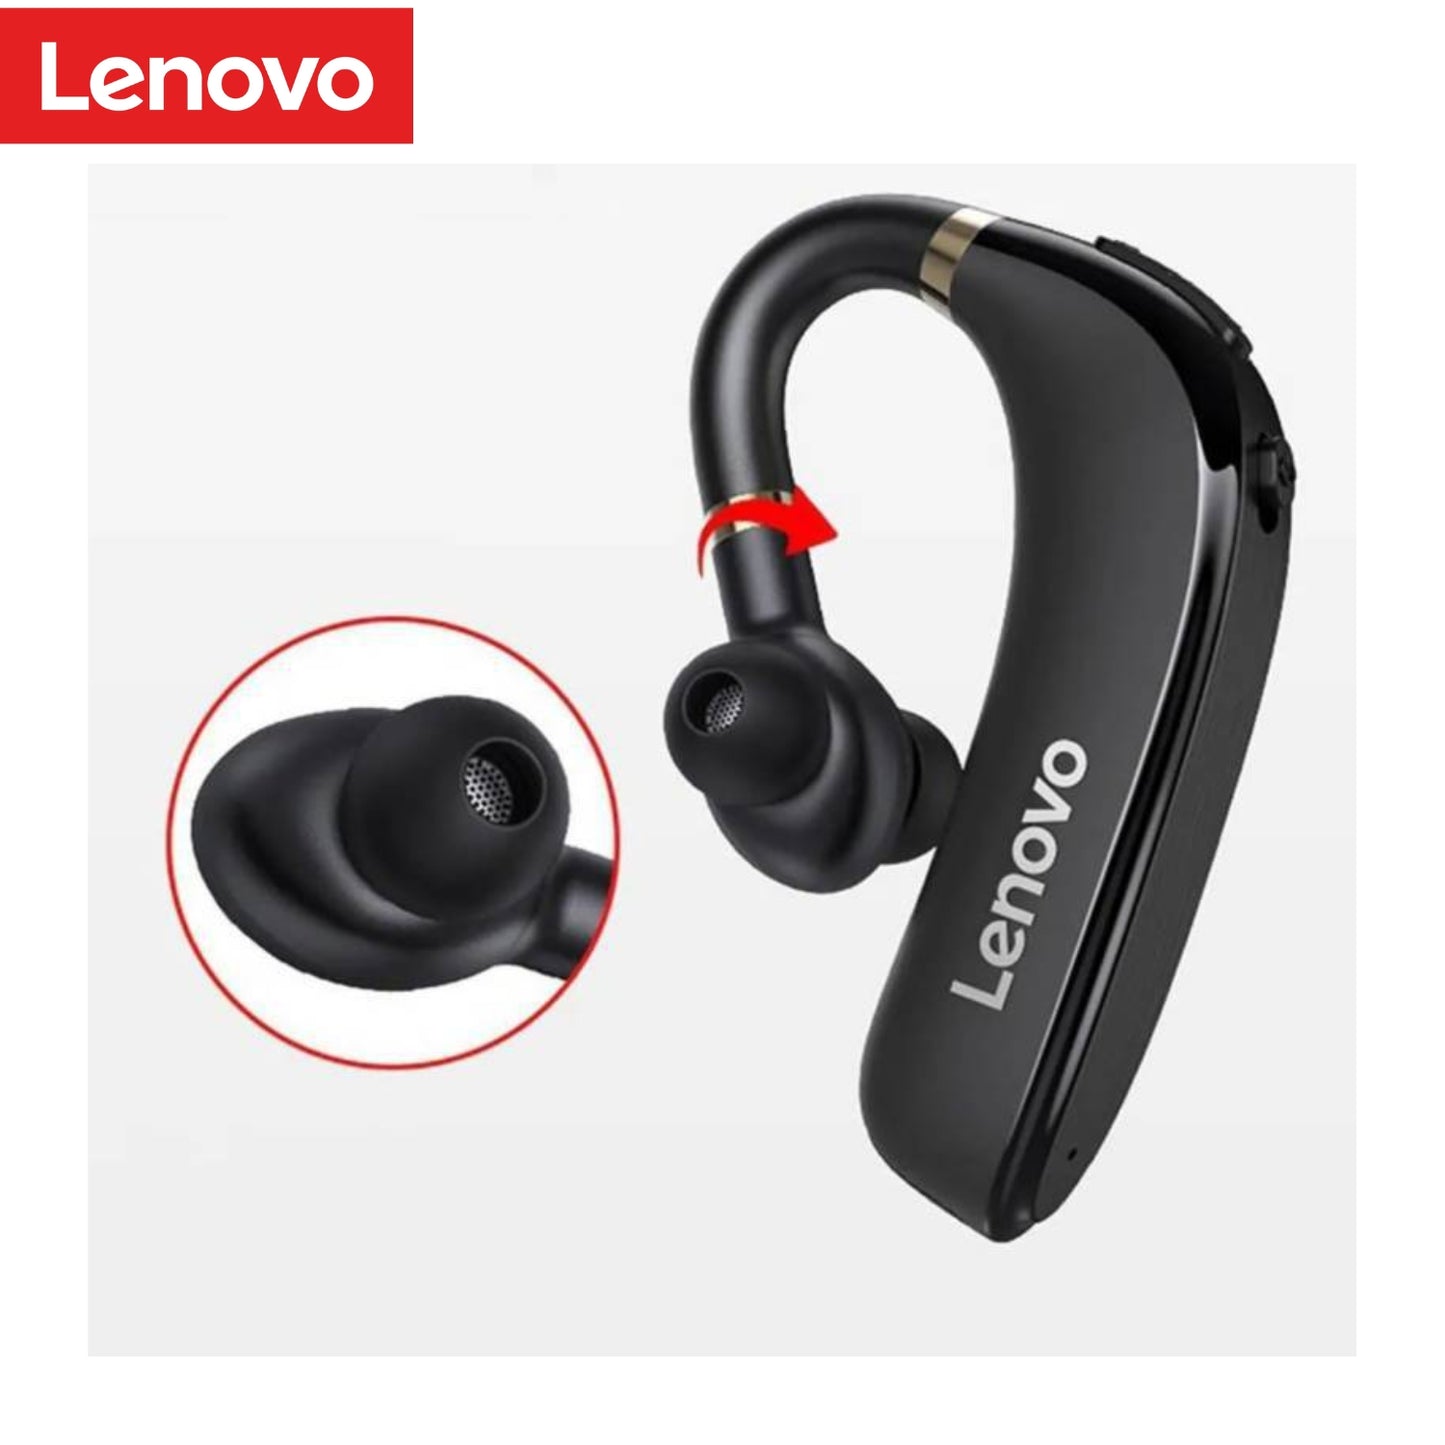 Audífono Bluetooth Lenovo HX106 Headset - Negro